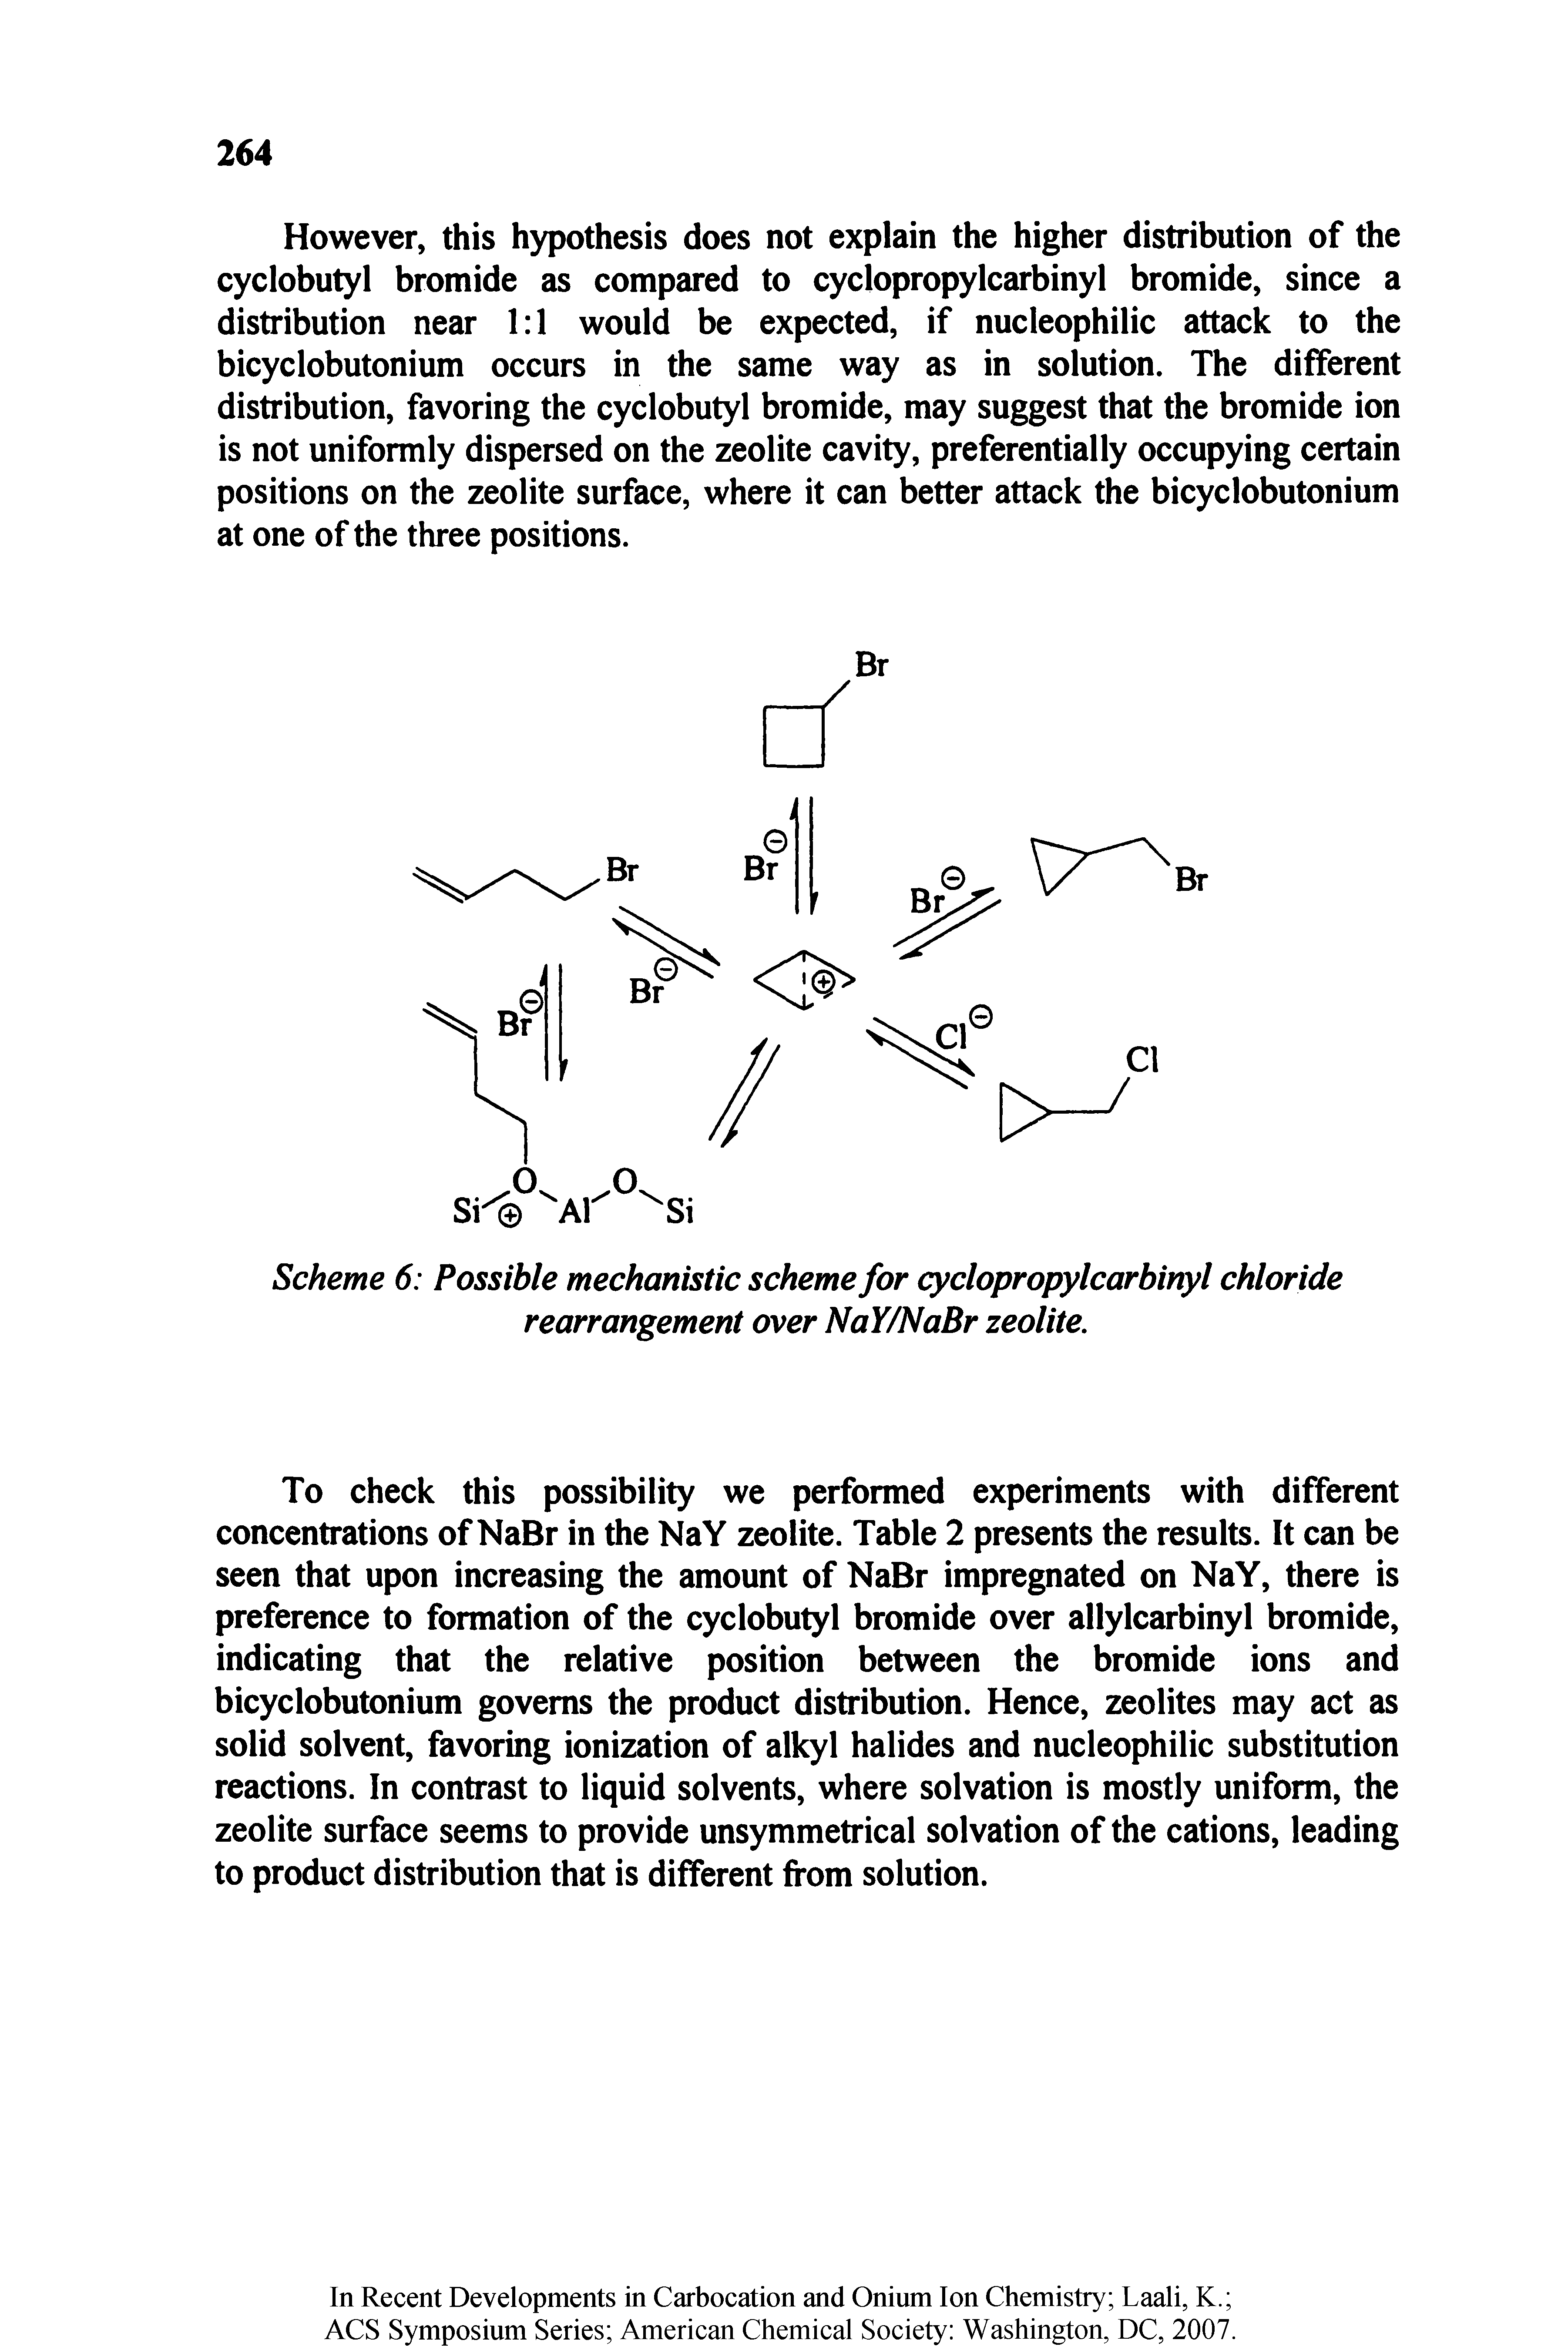 Scheme 6 Possible mechanistic scheme for cyclopropylcarbinyl chloride rearrangement over NaY/NaBr zeolite.